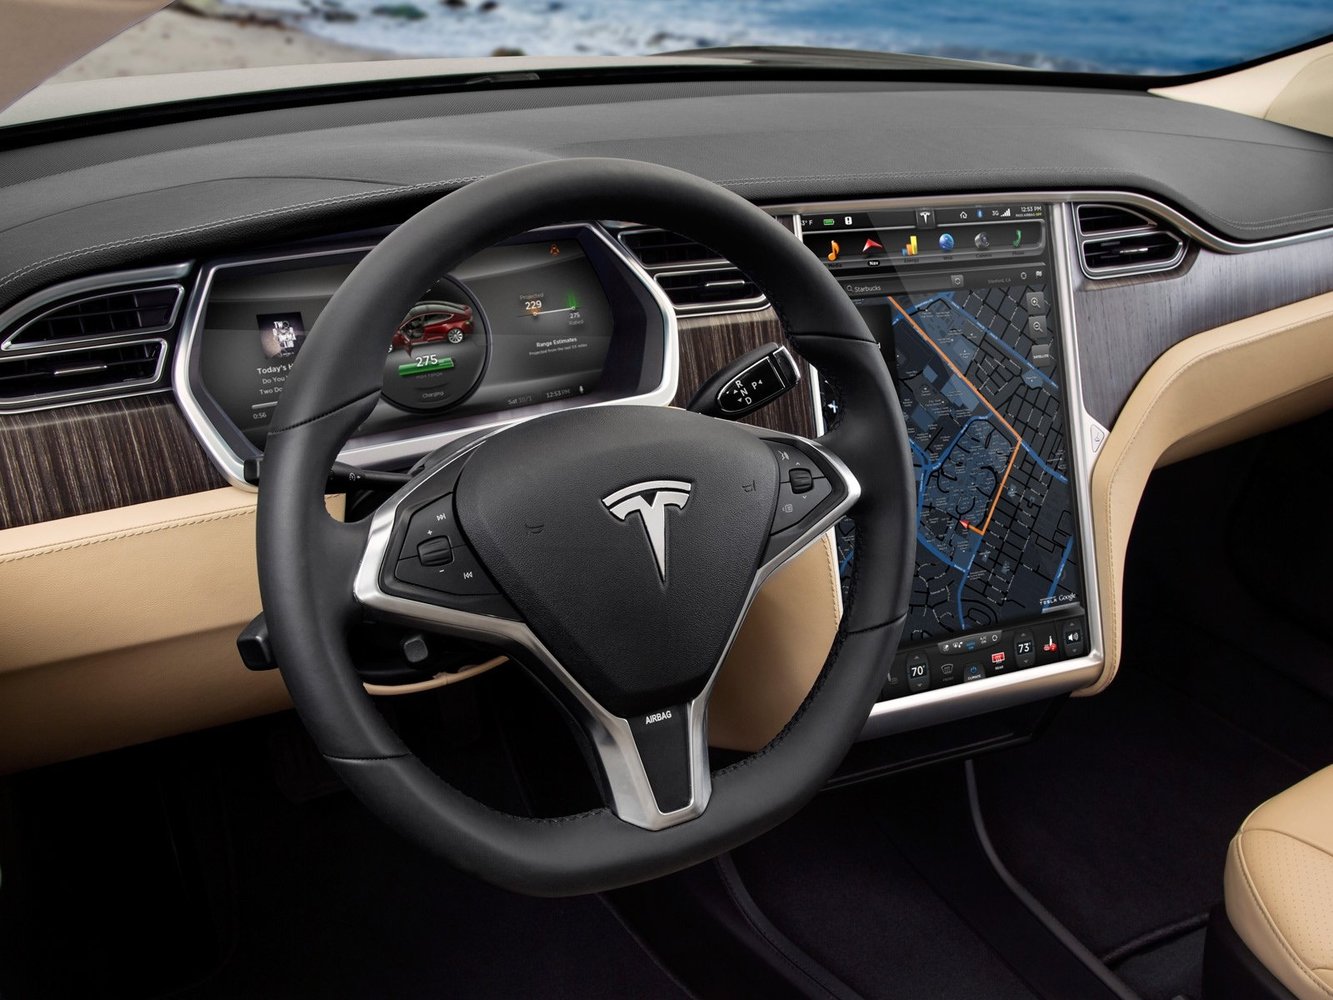 хэтчбек 5 дв. Tesla Model S 2012 - 2016г выпуска модификация Комплектация